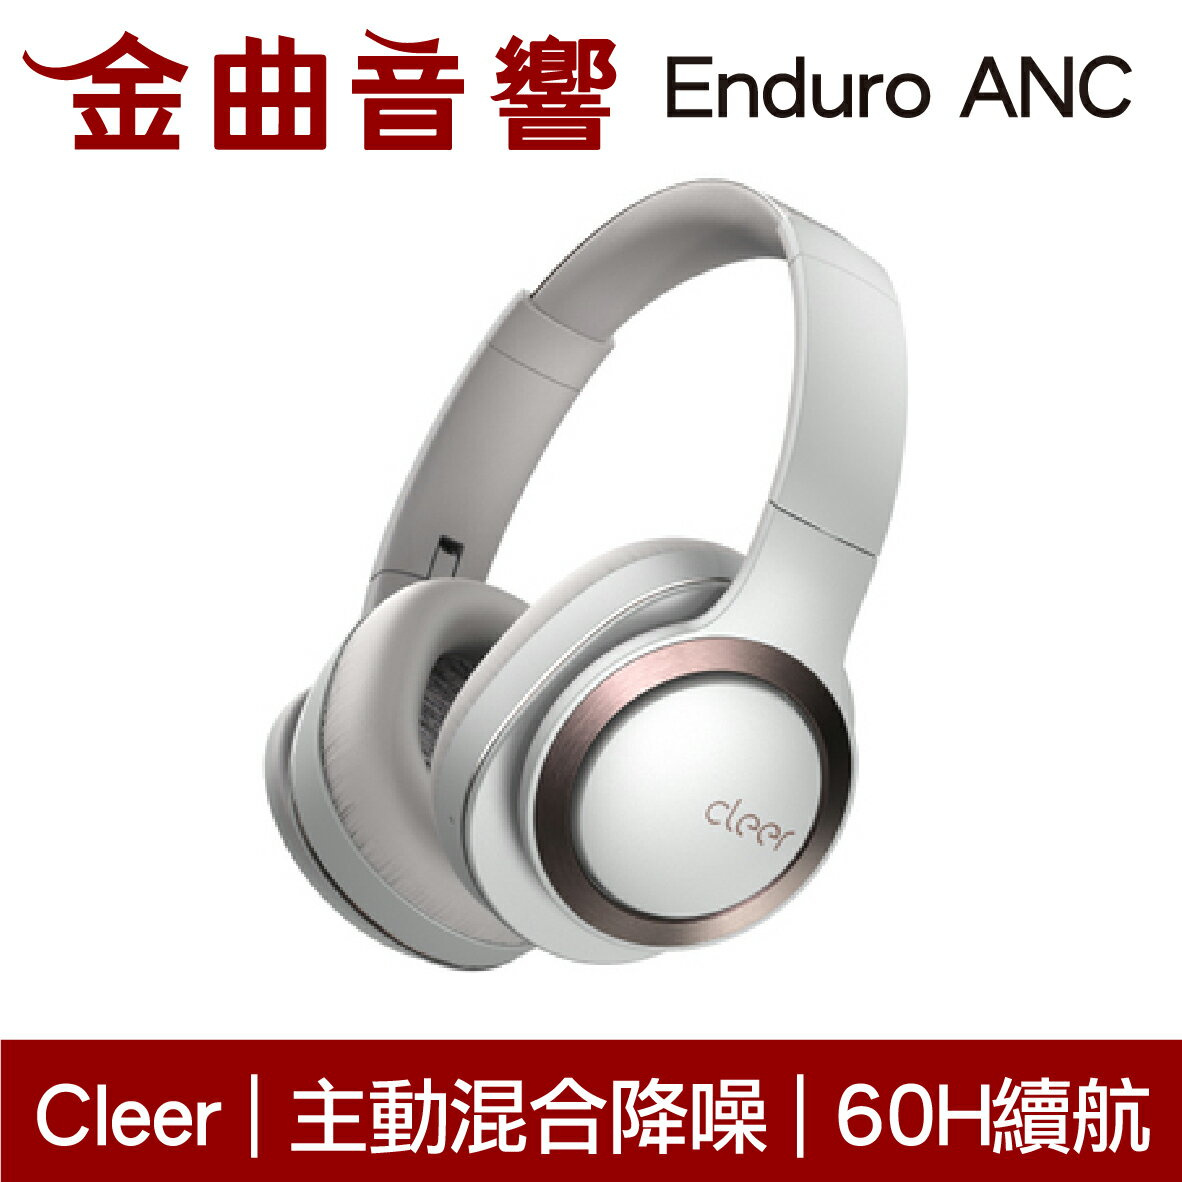 Cleer Enduro ANC 沙白色 智能降噪 雙麥通話 Hi-Res 通透模式 藍牙 耳罩式 耳機 | 金曲音響